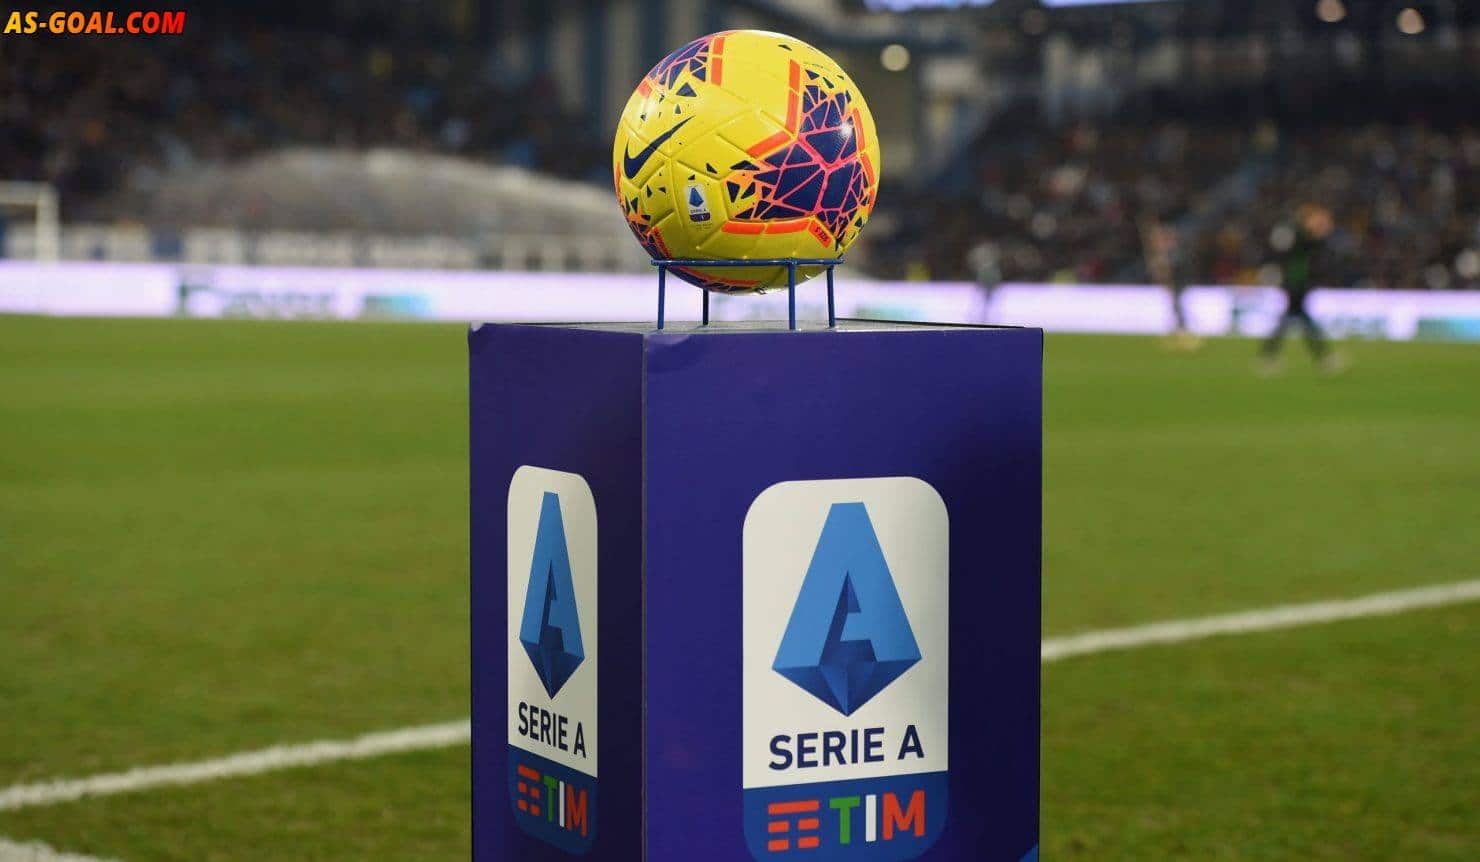 بث الدوري الإيطالي بالشرق الأوسط وشمال أفريقيا سيكون عبر اليوتيوب | AS Goal